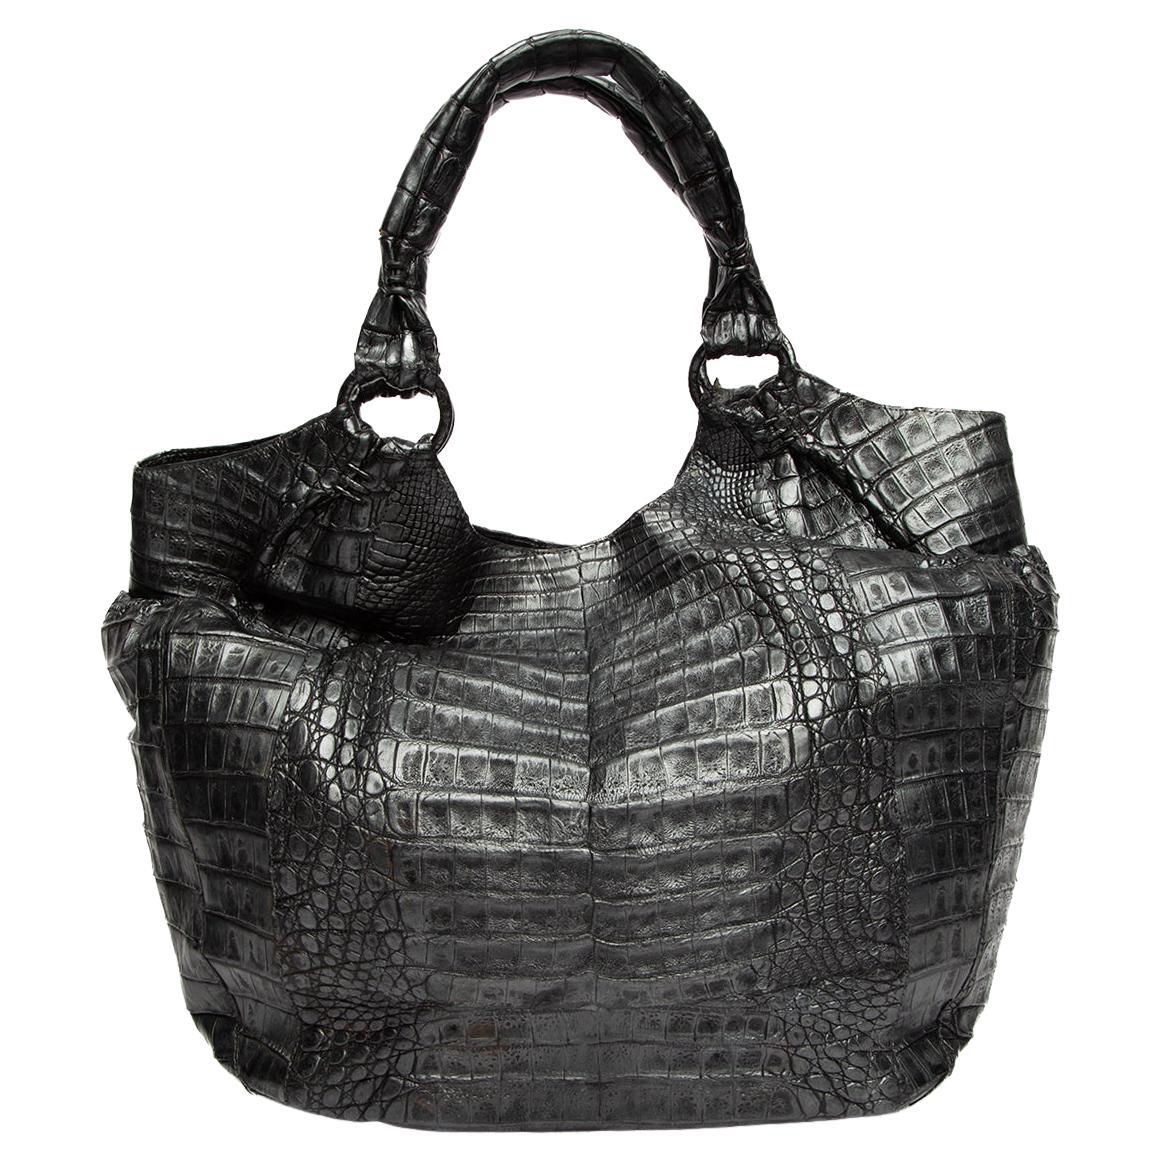 Pre-Loved Nancy Gonzalez Women's Crocodile Leather Handbag